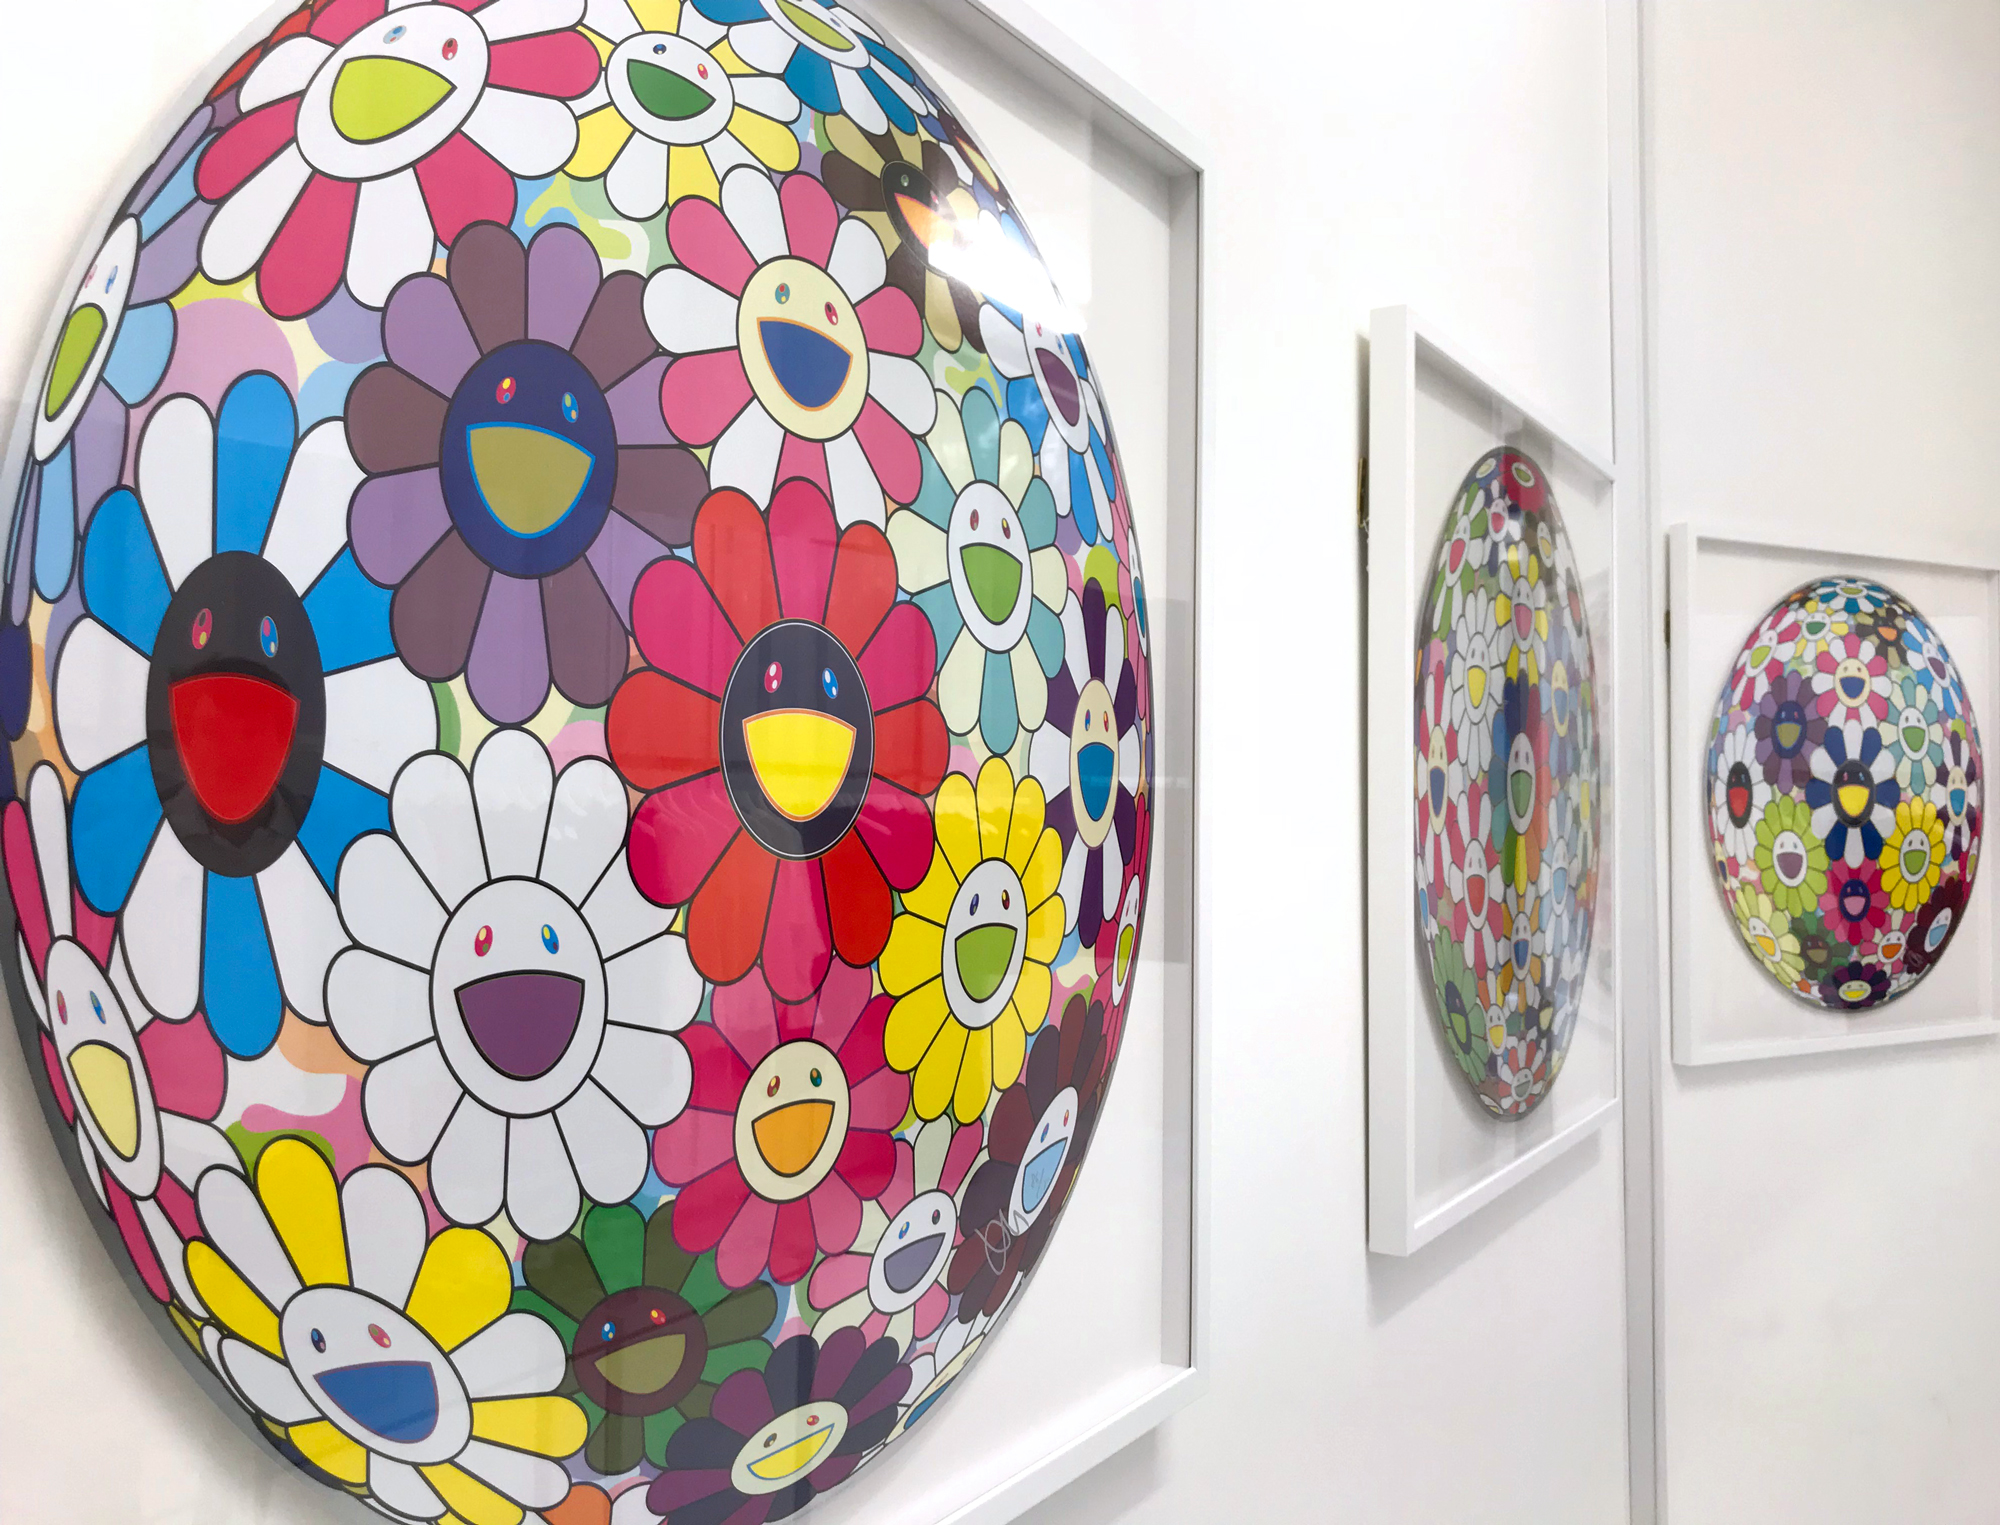 Kumi Contemporary Showcasing Takashi Murakami Flower Ball Prints In London Widewalls